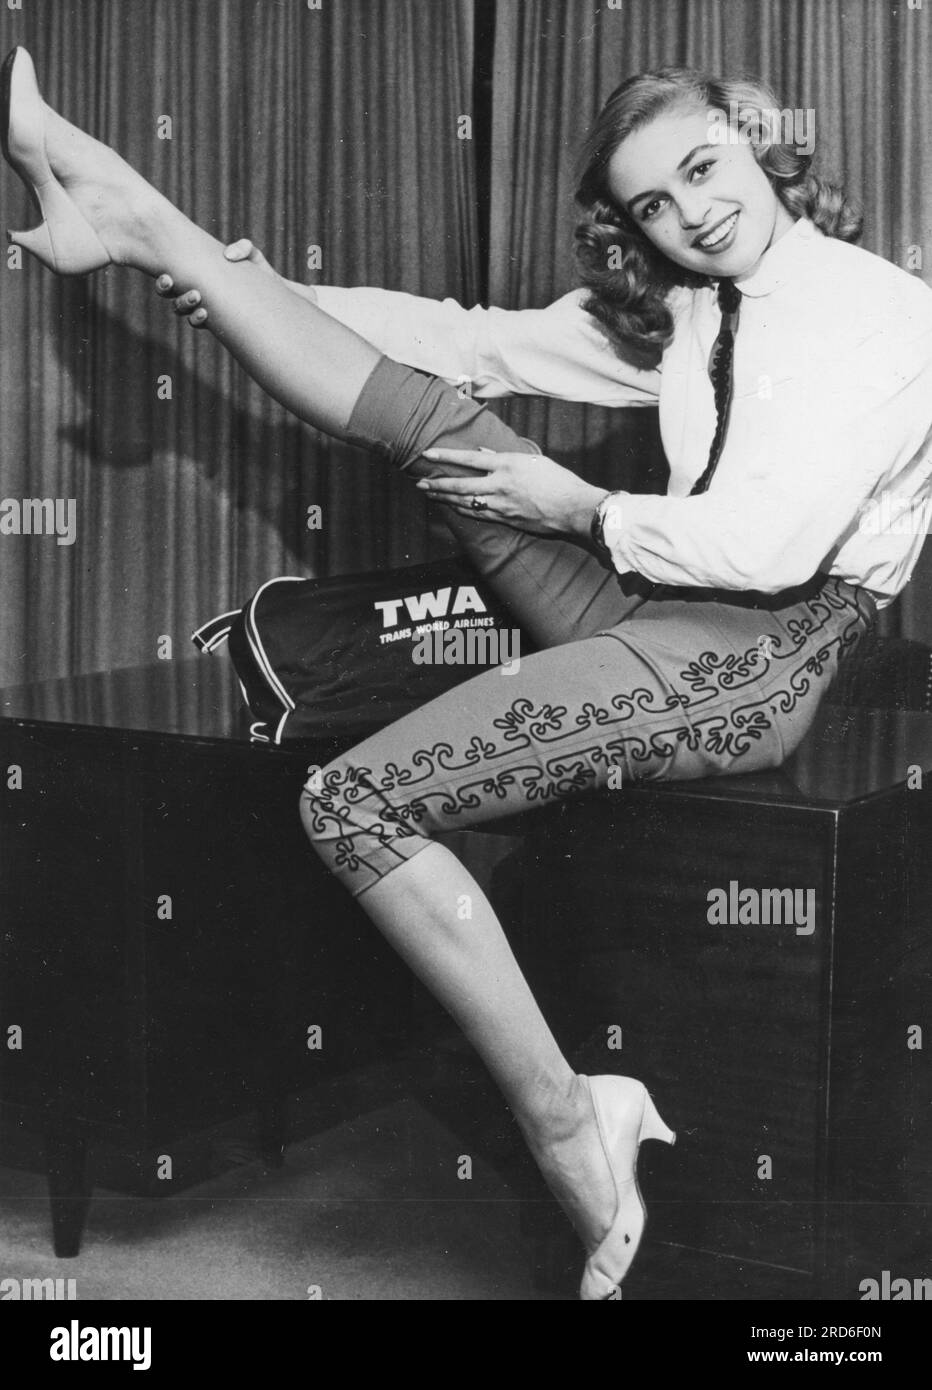 Gens, femmes, années 1950, née en Allemagne Gisela Wright (19) étire la jambe, INFO-AUTORISATION-DROITS-NON-DISPONIBLE Banque D'Images